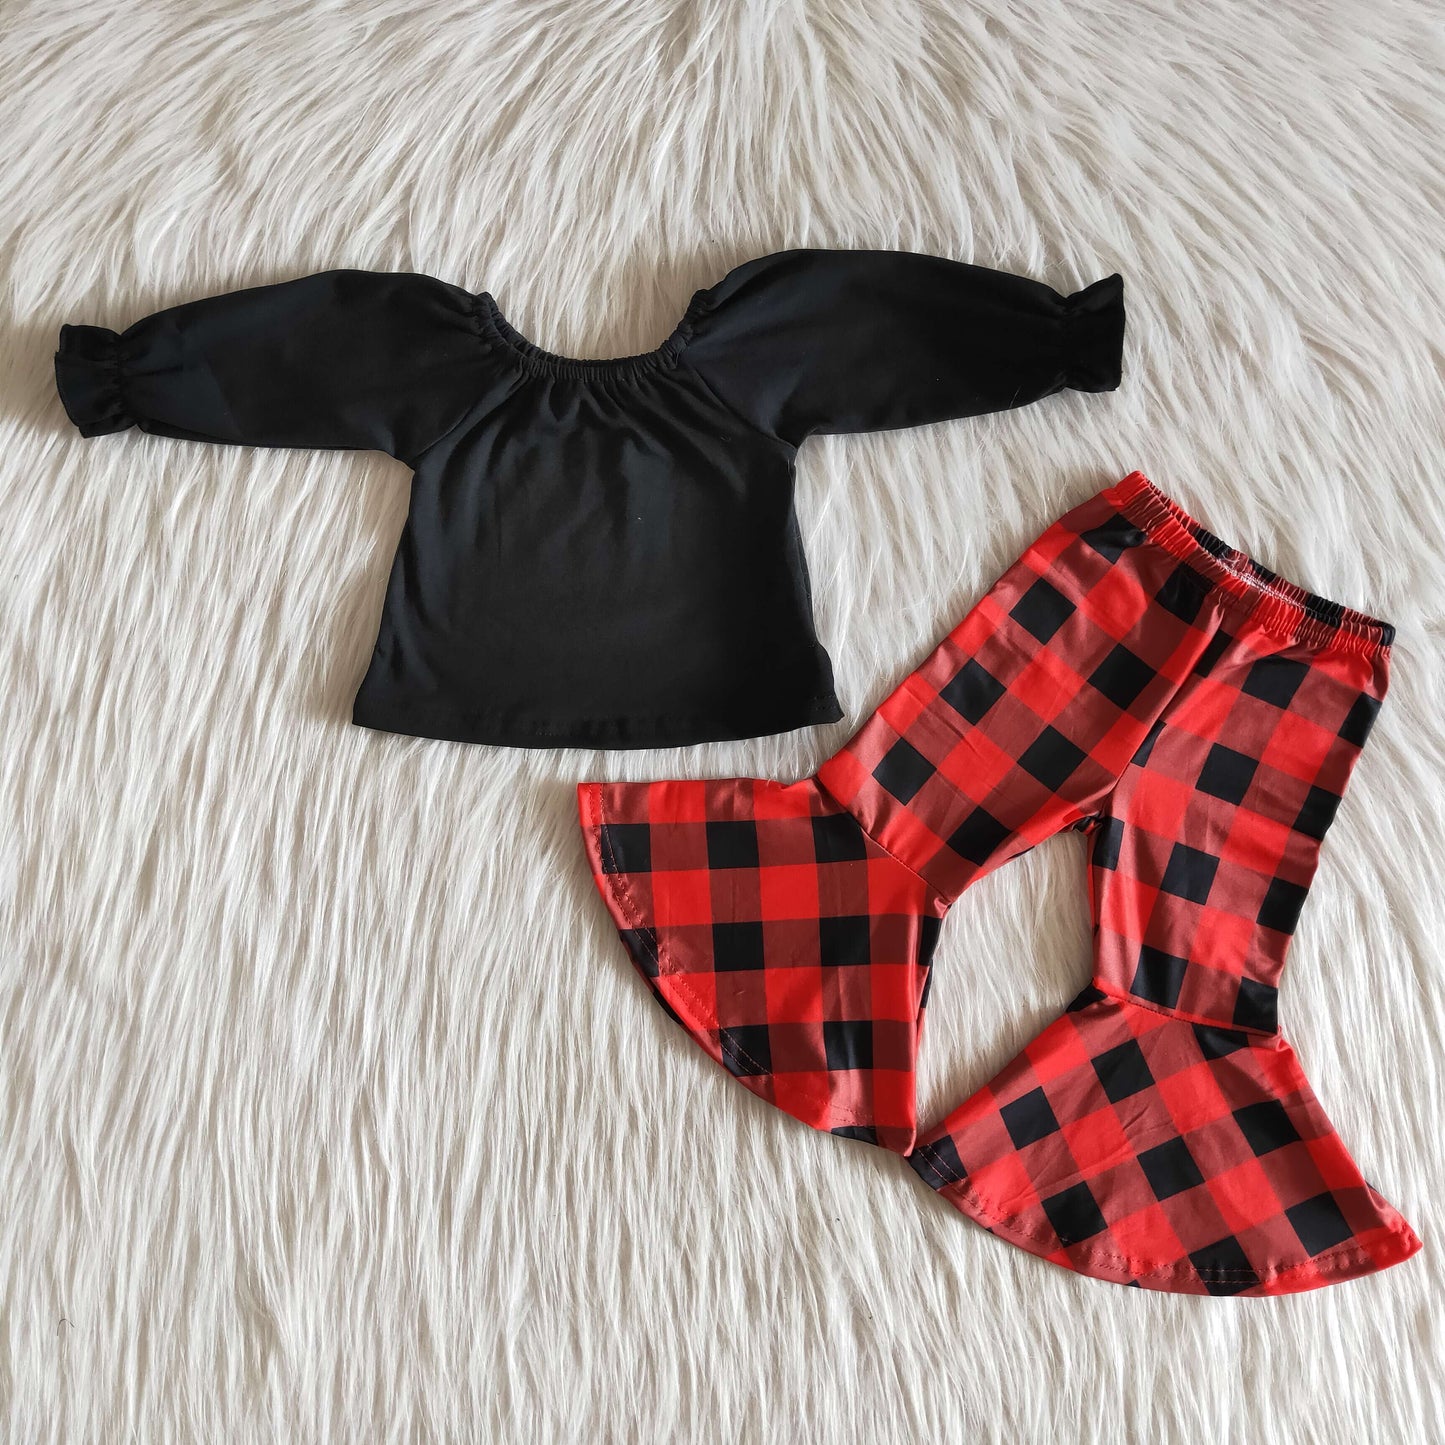 Infant girls black cotton top plaid pants 2pcs Christmas outfits